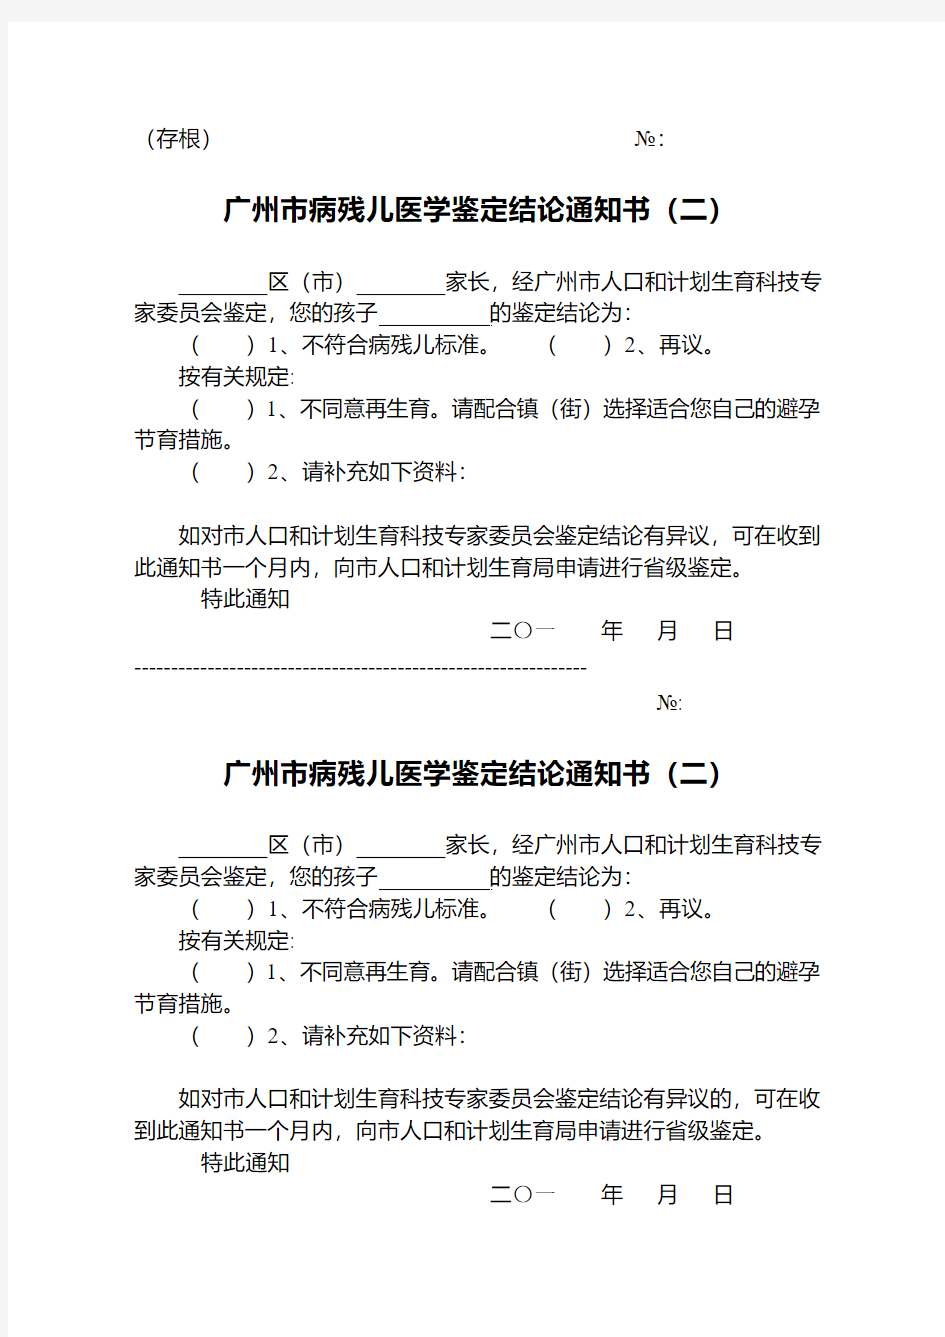 广州市病残儿医学鉴定结论通知书 - 广州市卫生和计划生育委员会